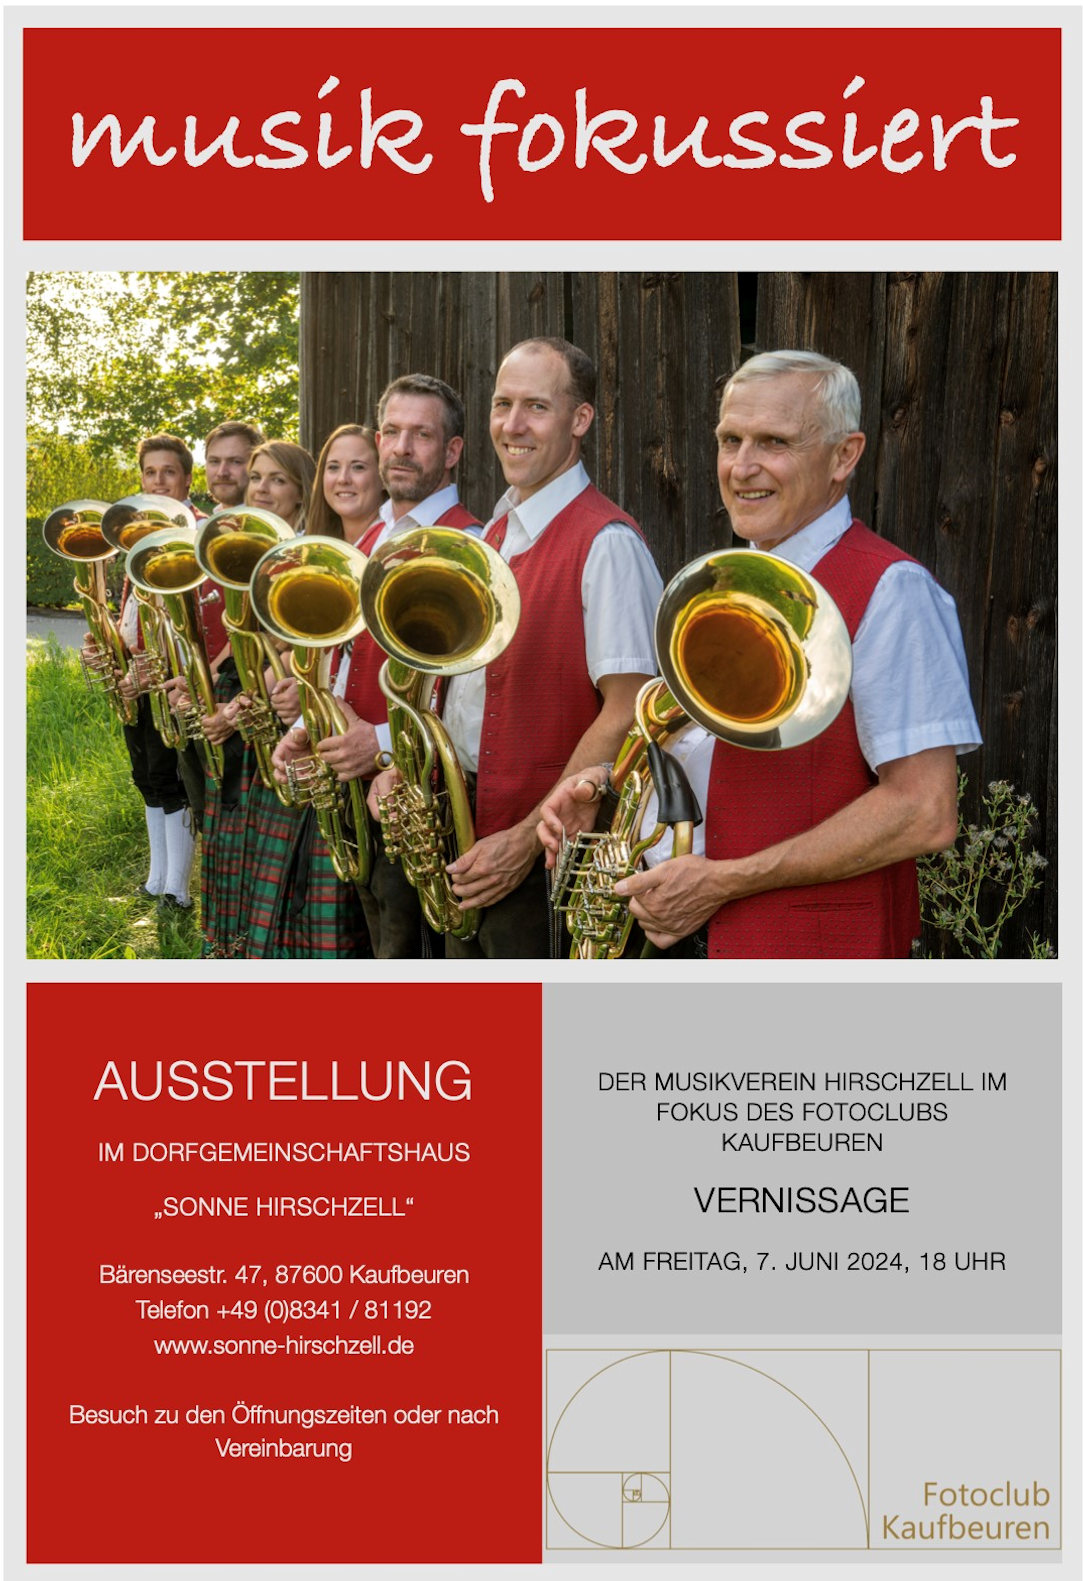 Ausstellung: Der Musikverein Hirschzell im Fokus des Fotoclubs Kaufbeuren